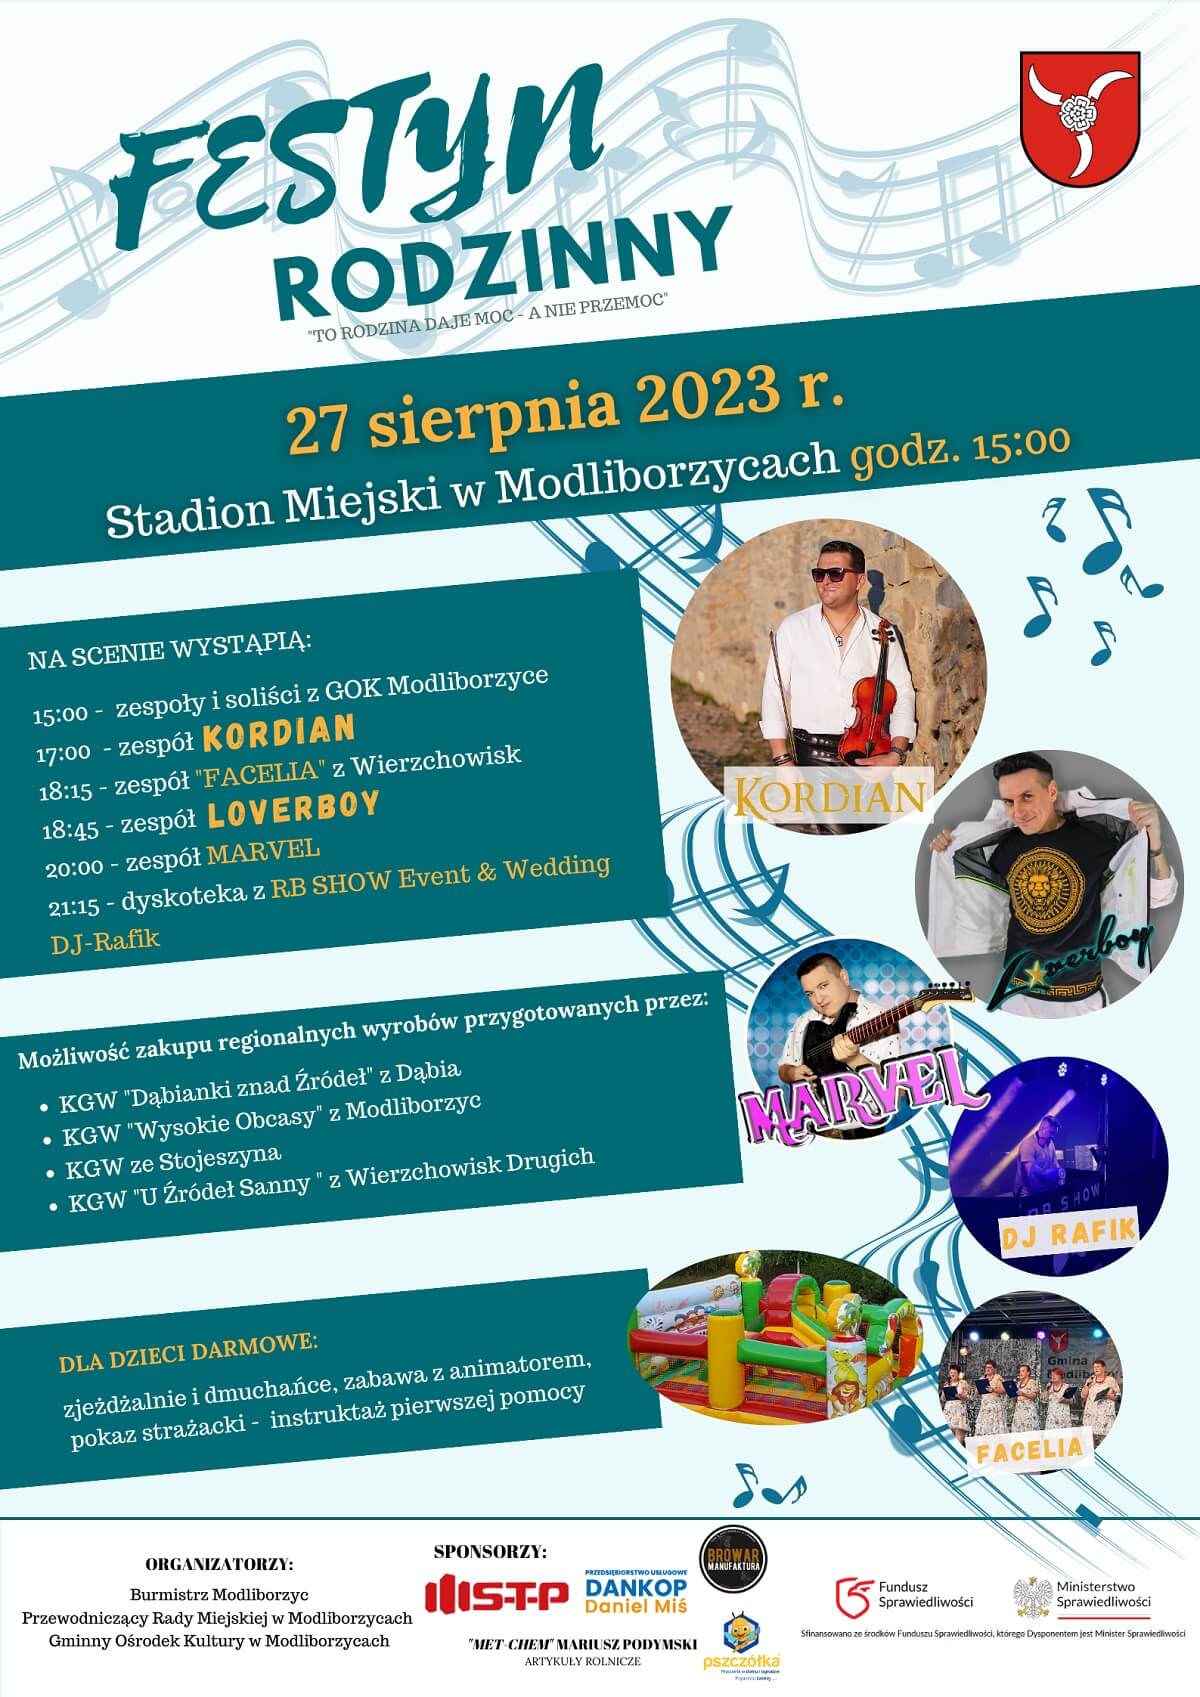 Festyn Rodzinny w Modliborzycach 2023 - plakat, program wydarzenia